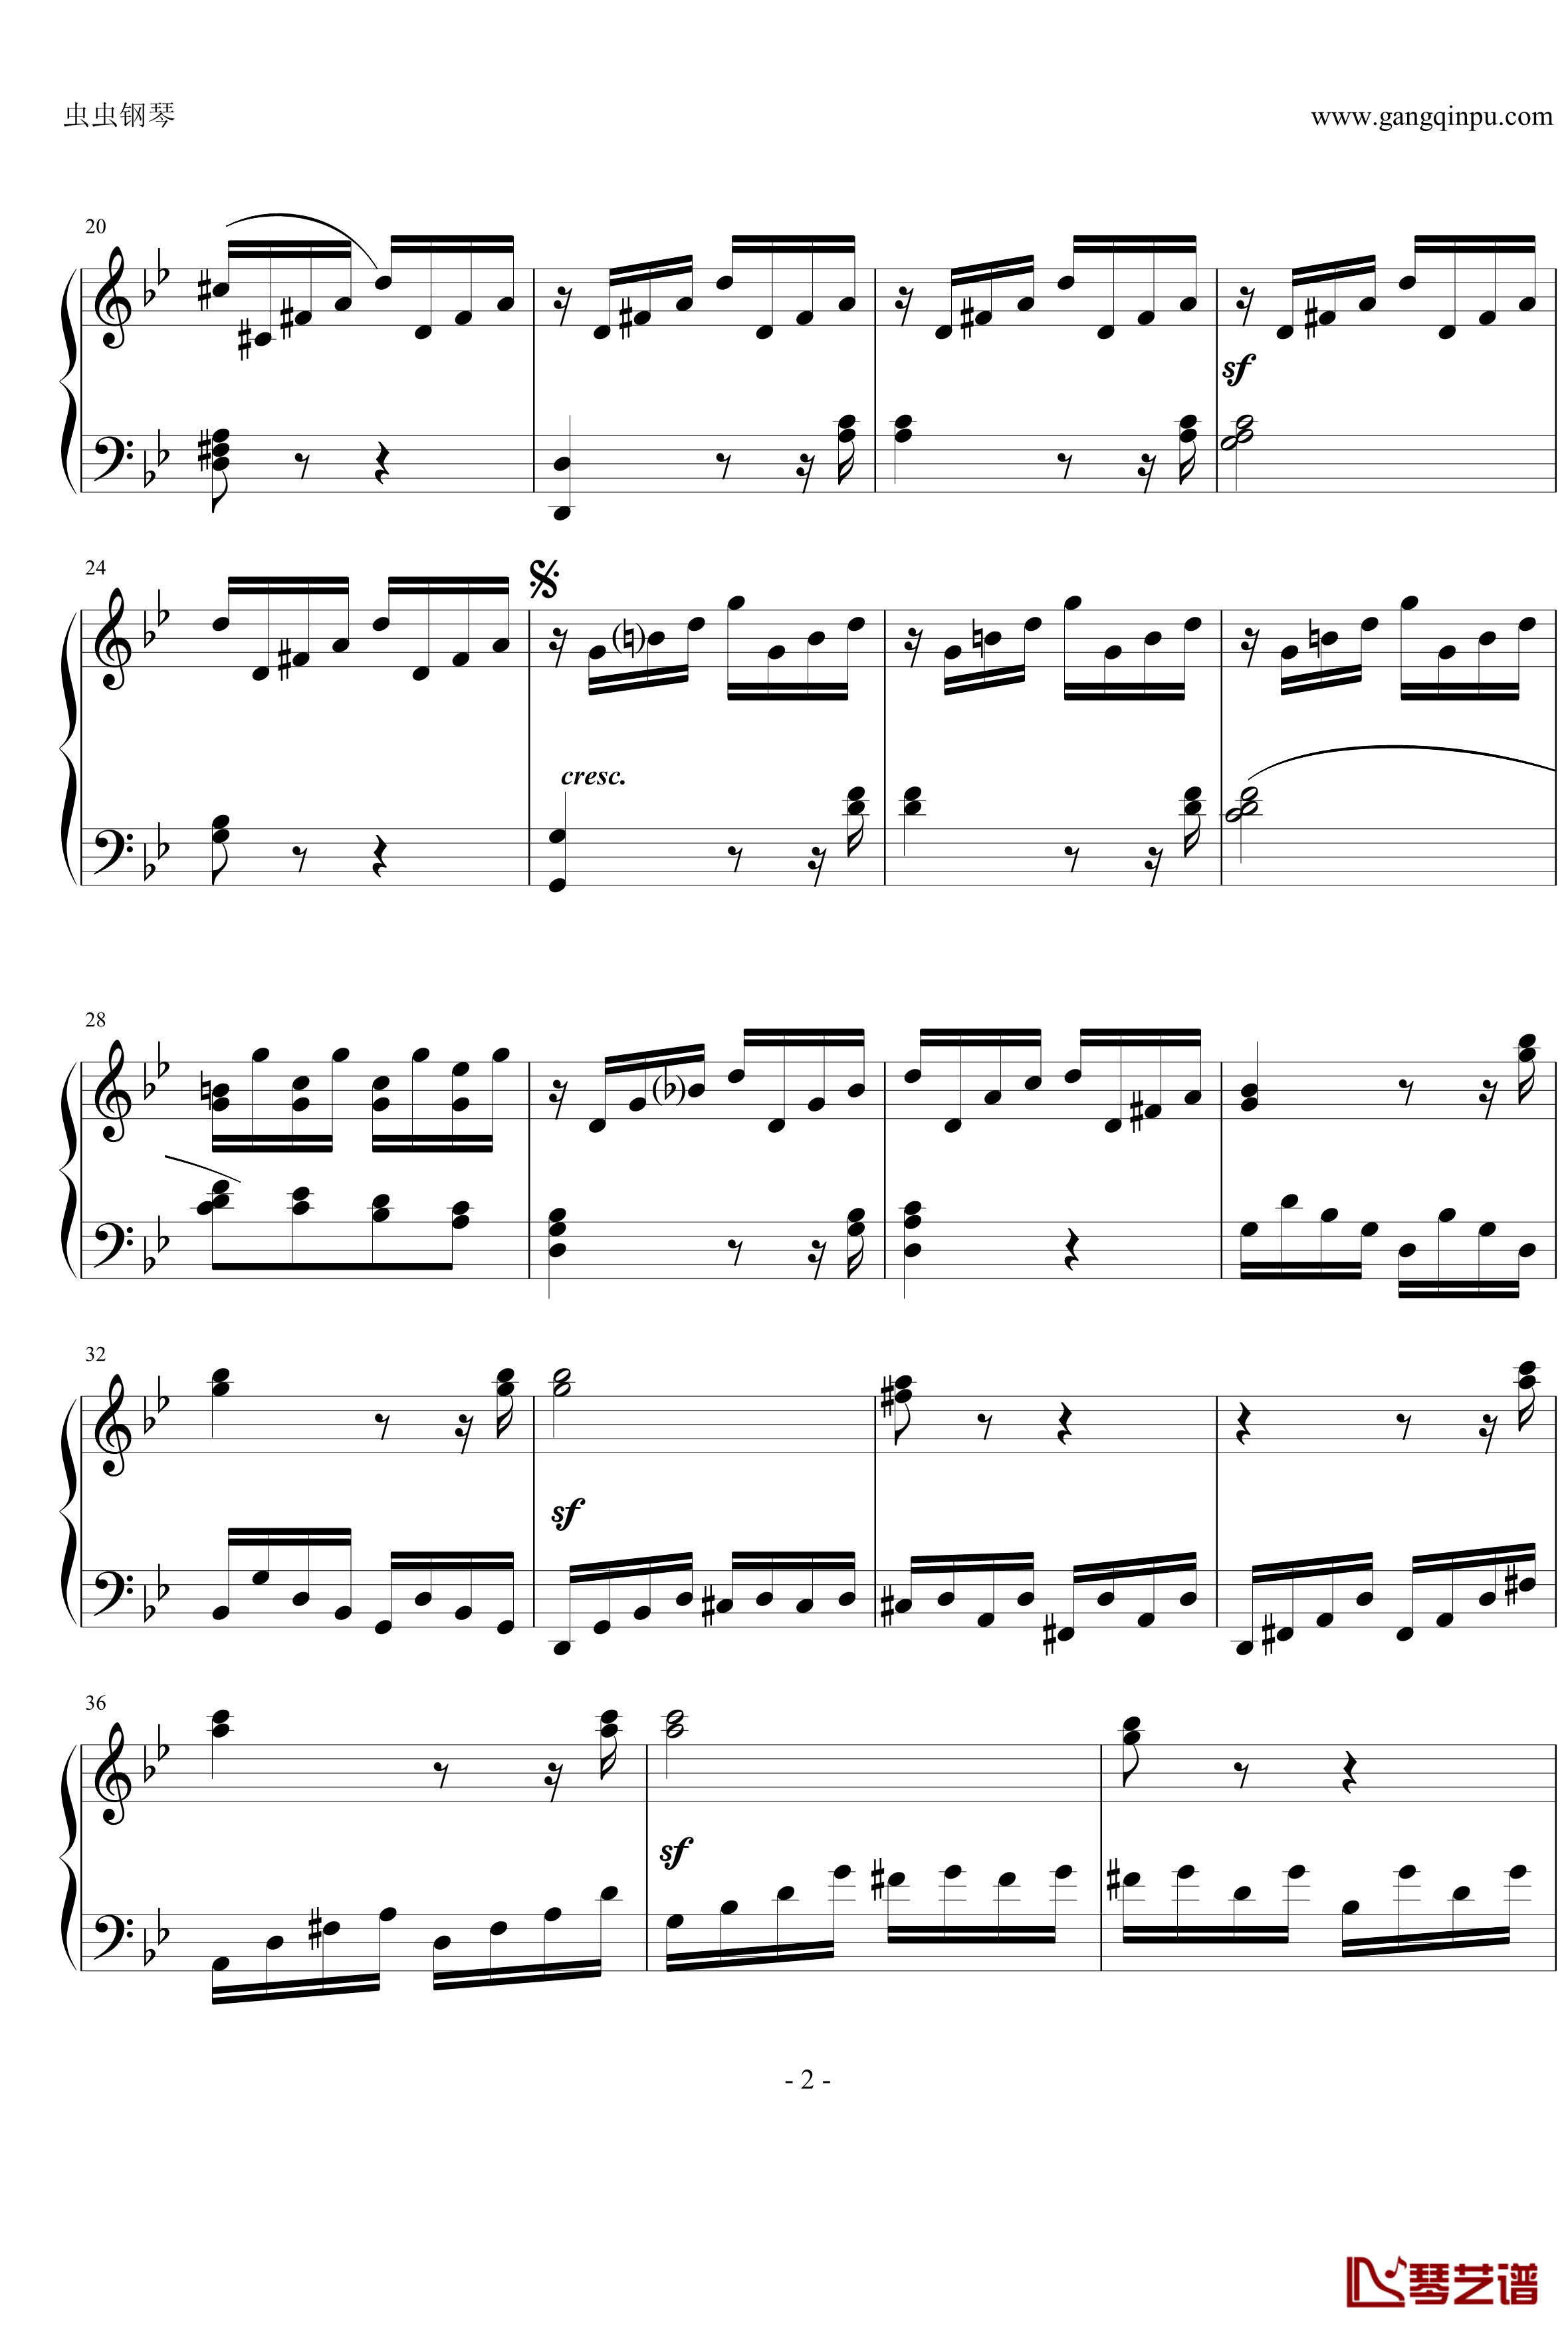 热情奏鸣曲钢琴谱-第三乐章简化改编版-贝多芬-beethoven2